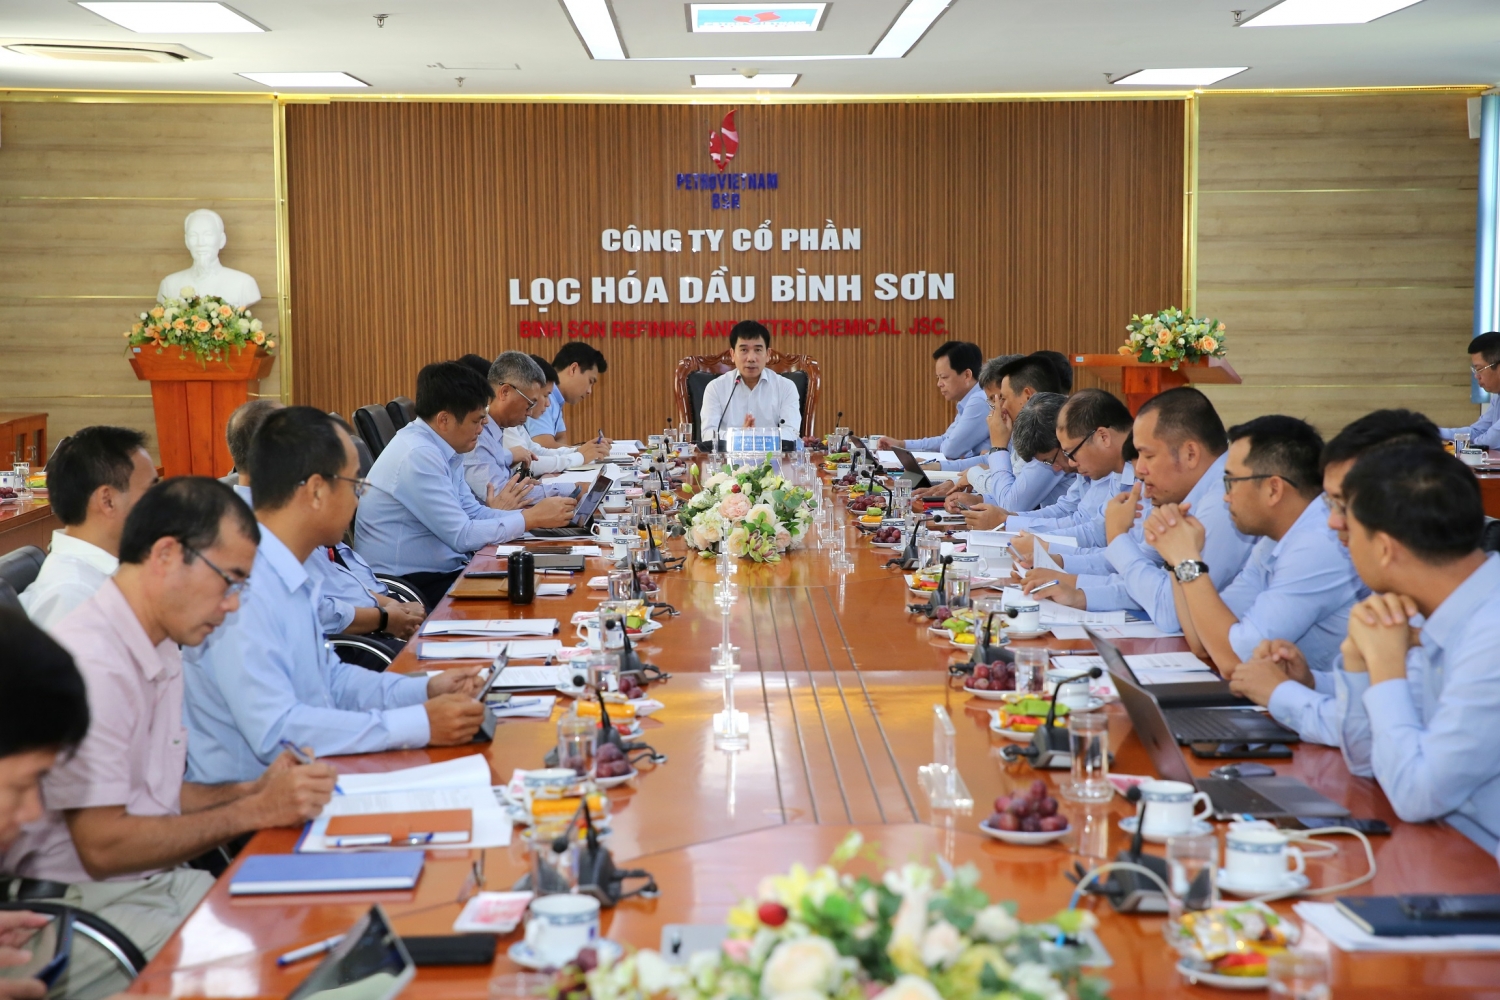 Phó Tổng Giám đốc Petrovietnam Lê Xuân Huyên phát biểu kết luận buổi làm việc